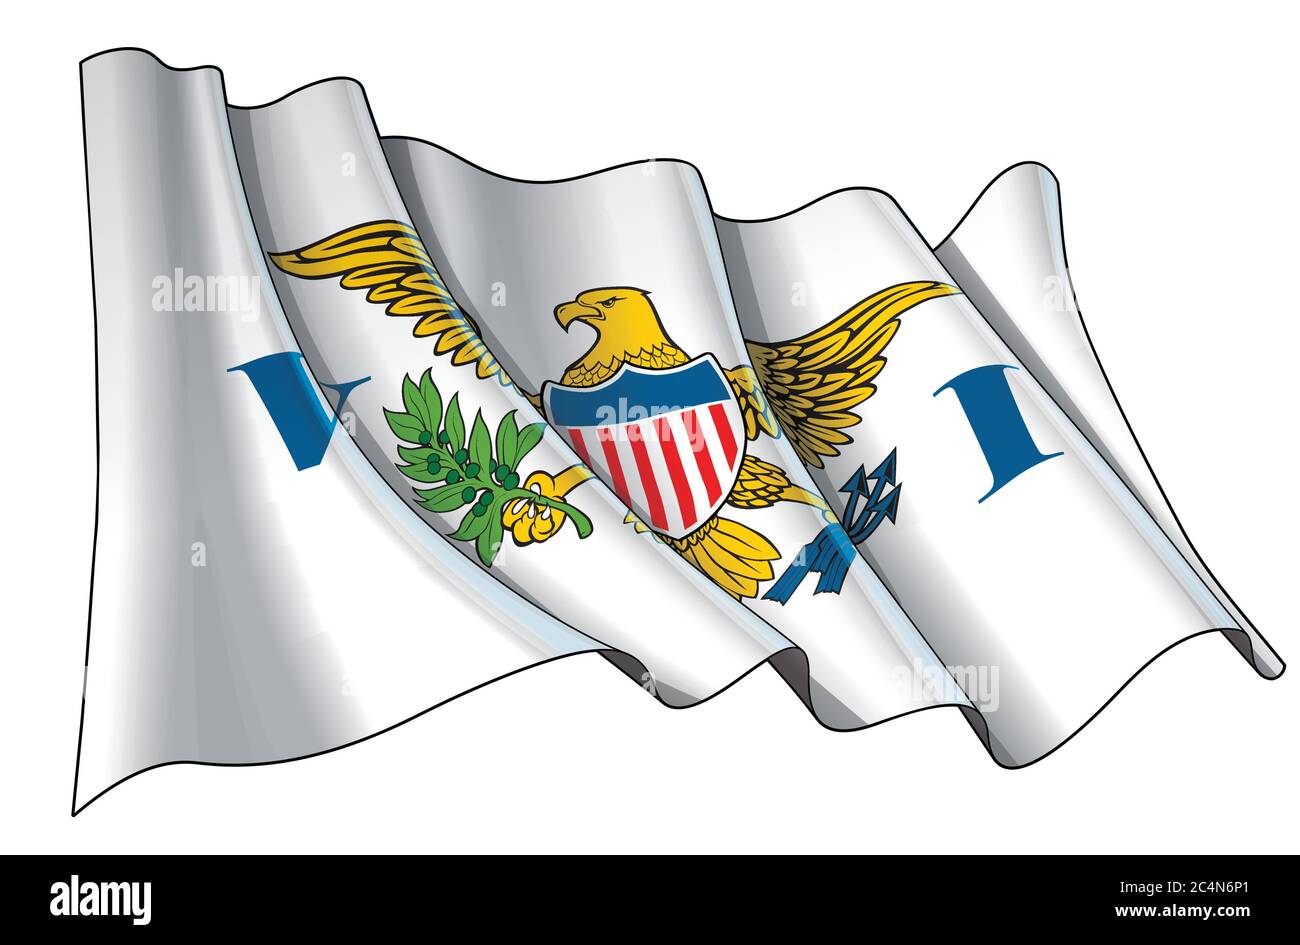 Vektordarstellung einer wehenden Flagge der US Jungferninseln. Alle Elemente übersichtlich auf klar definierten Ebenen und Gruppen. Stock Vektor